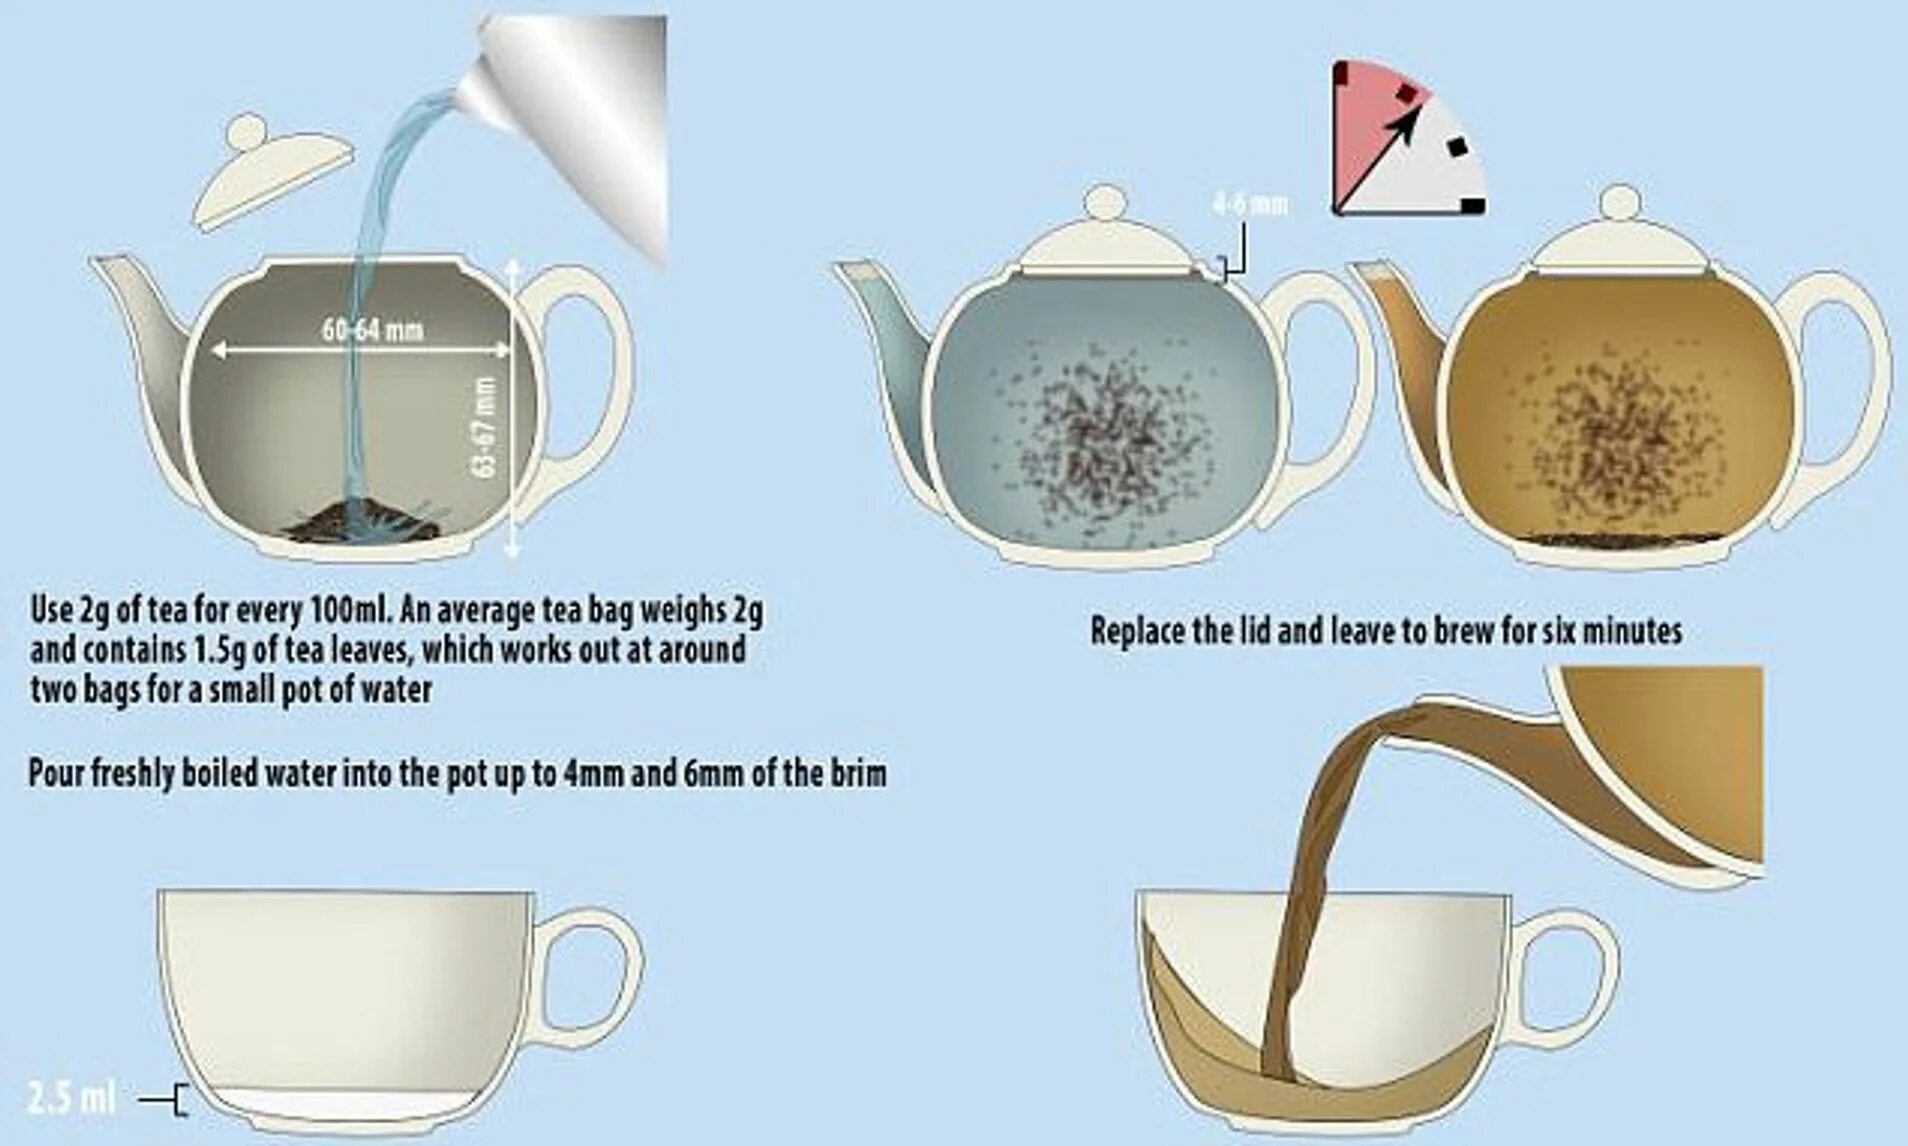 How to make sure. How to make Tea. How to make a Cup of Tea. How to make a Cup of Tea игра. How to make a perfect Cup of Tea.